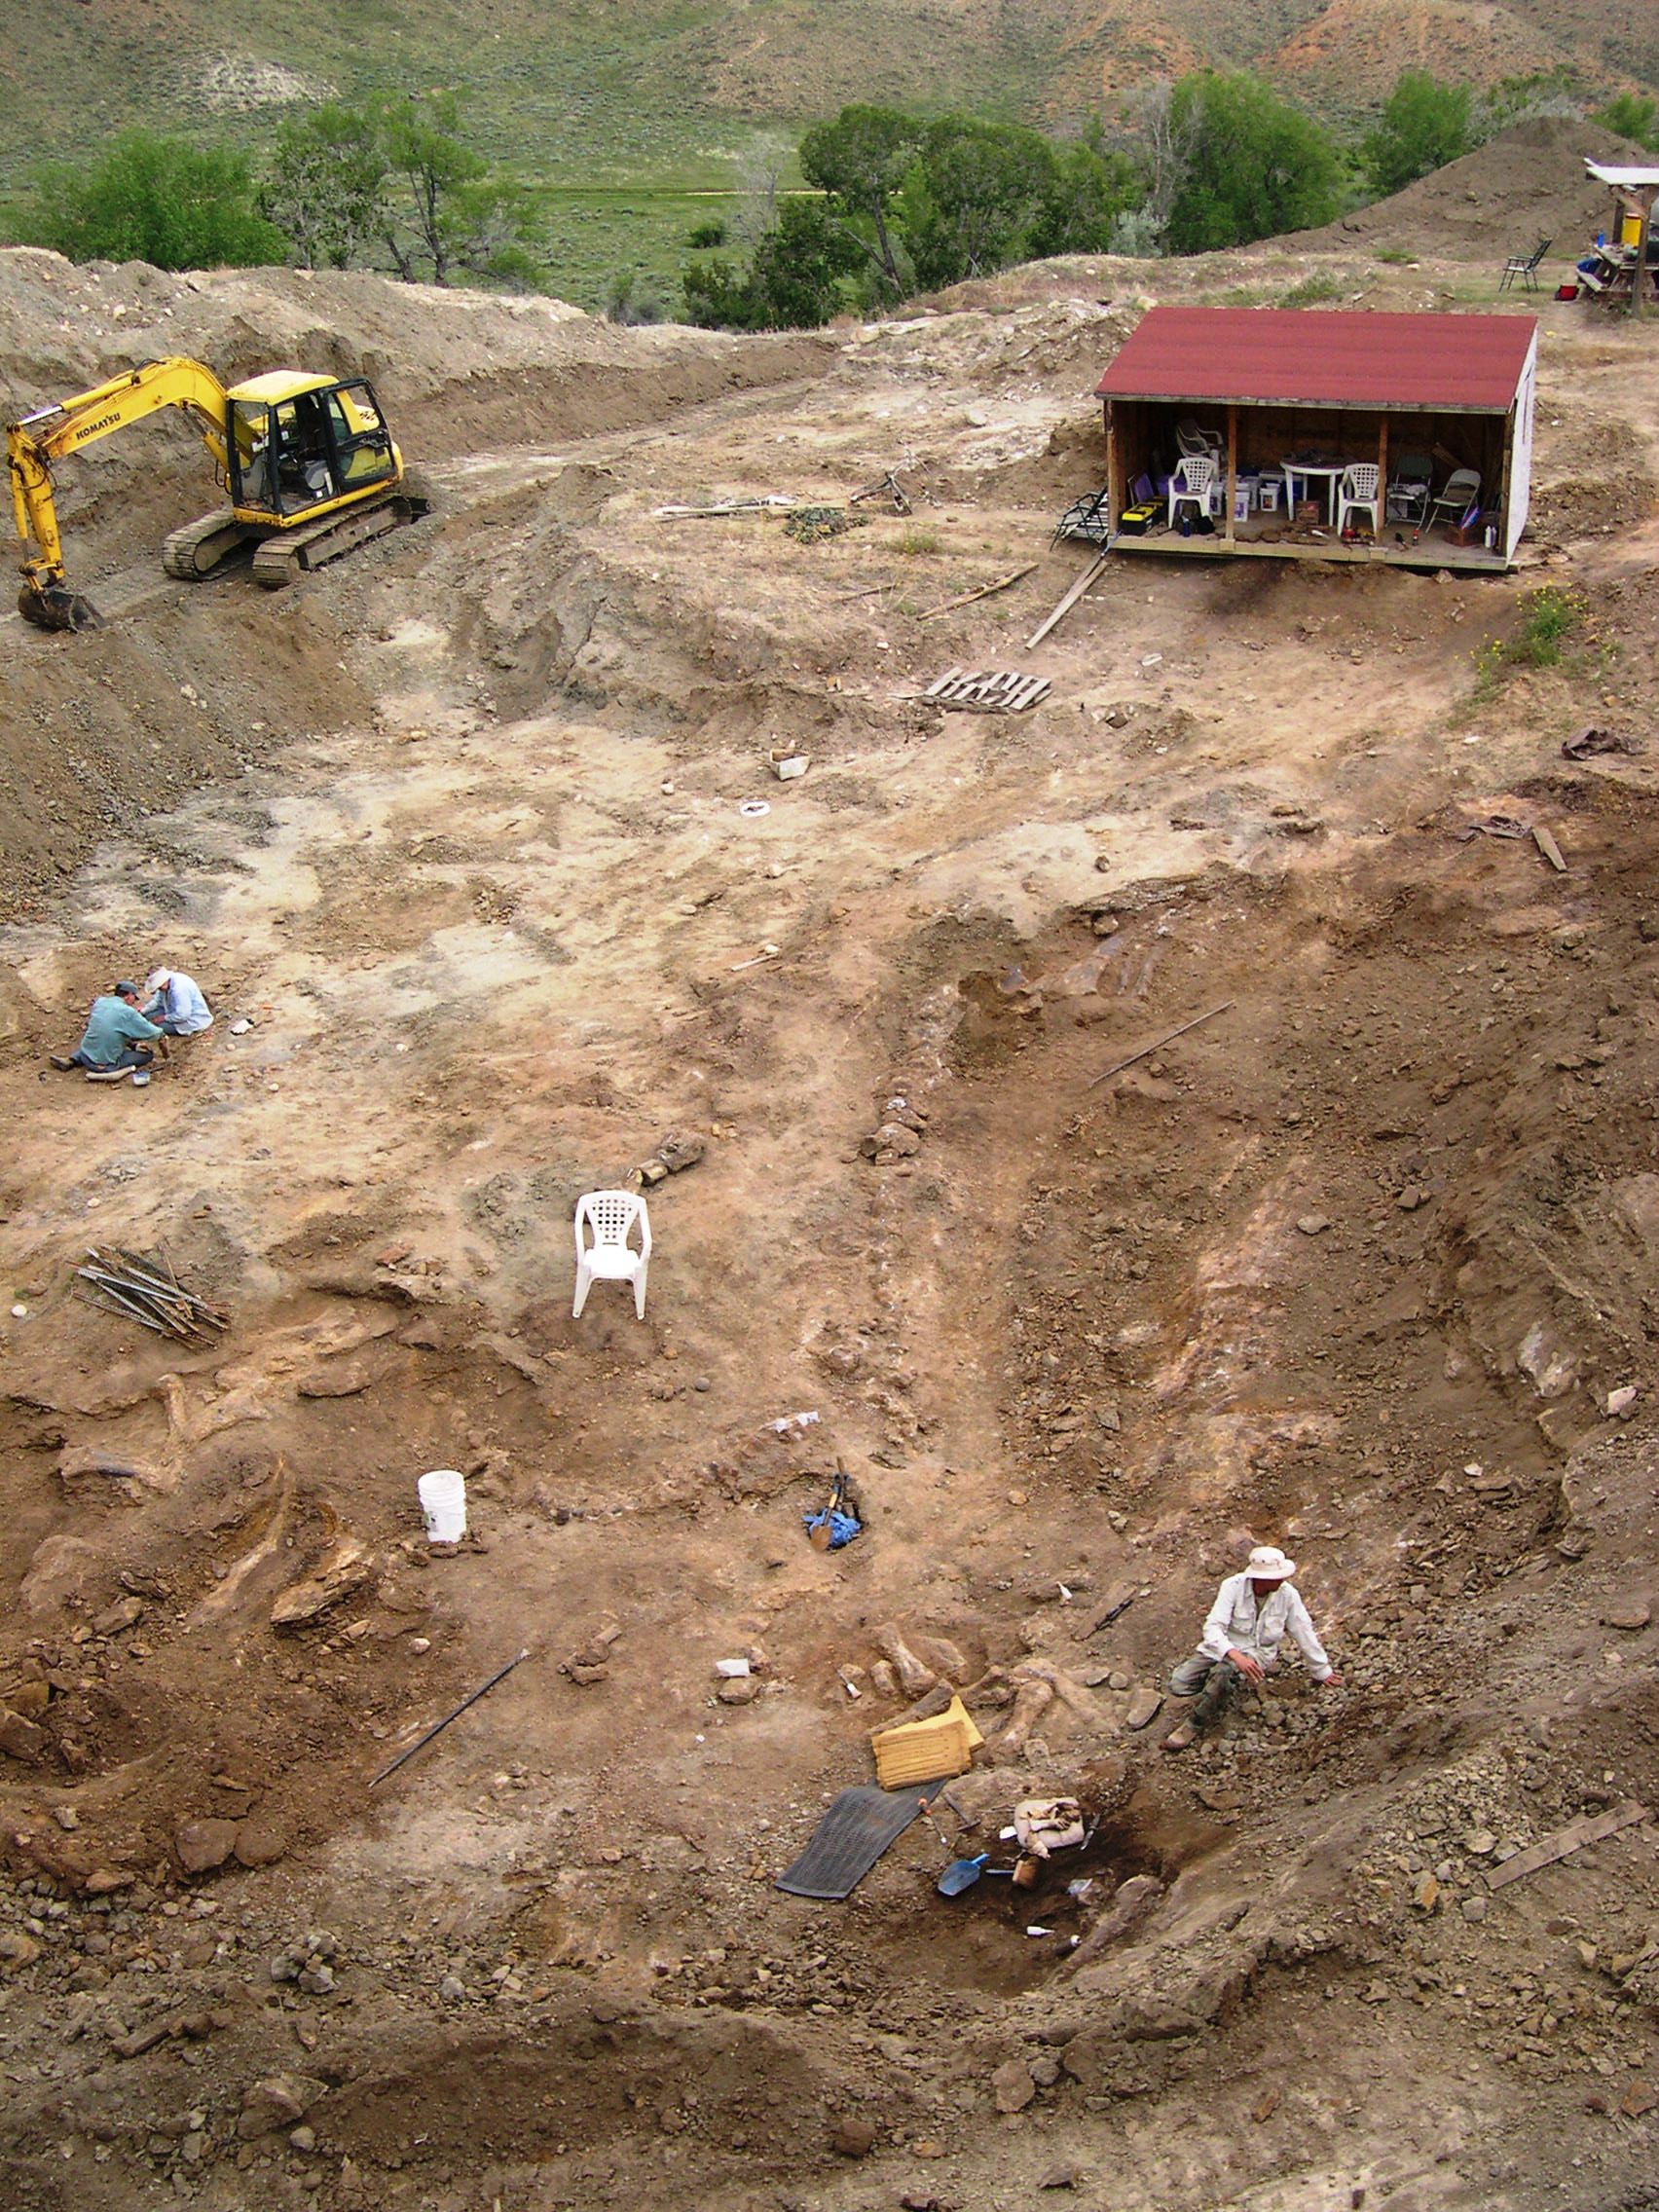 Jurassic Period dig site